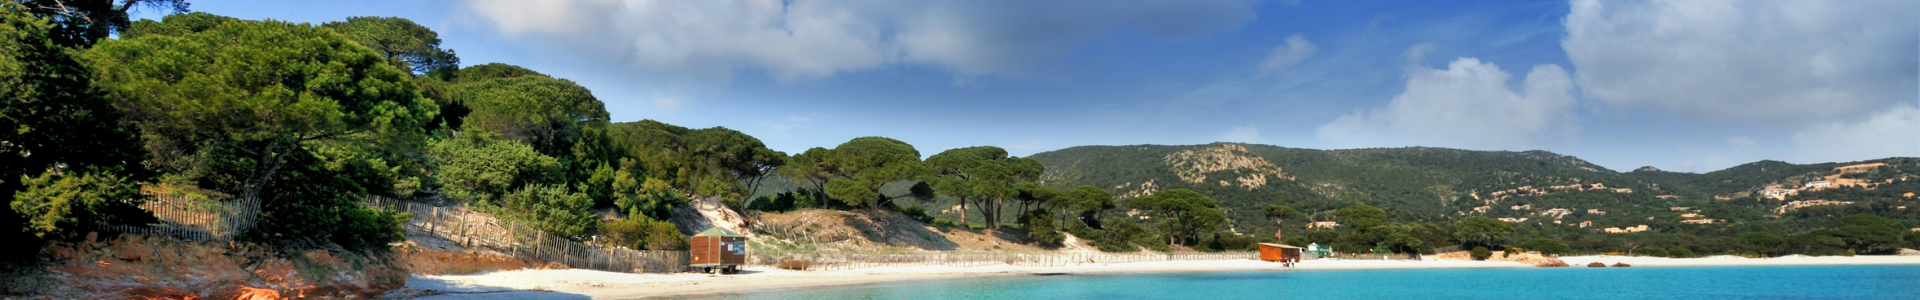 Voyage privé : ventes flash week-ends en Corse, - 65 %